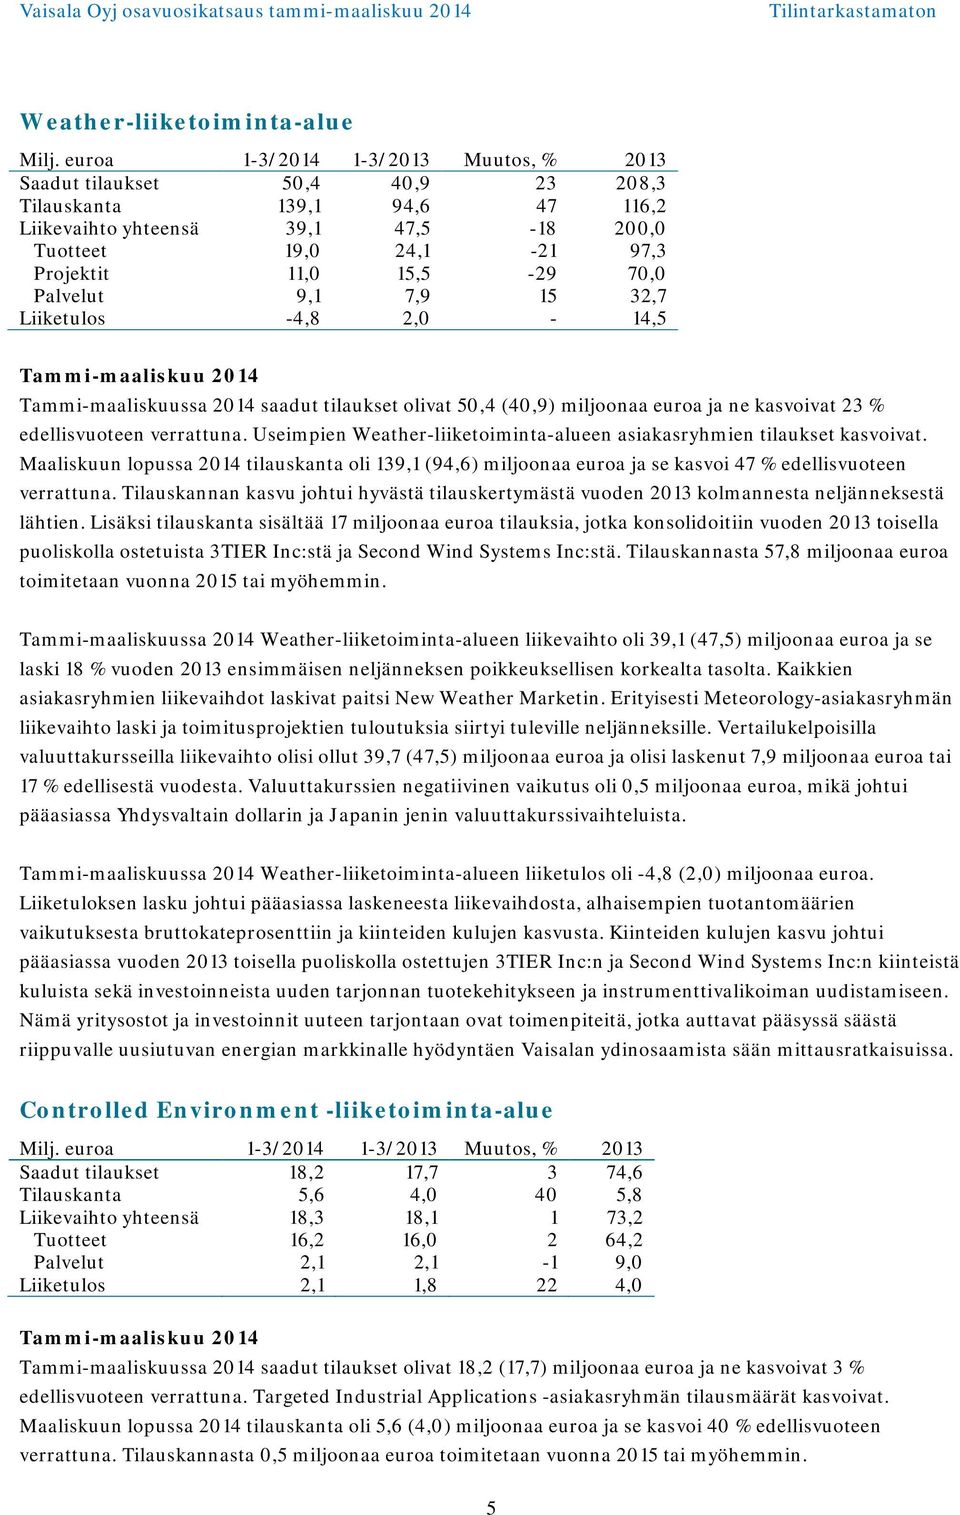 70,0 Palvelut 9,1 7,9 15 32,7 Liiketulos -4,8 2,0-14,5 Tammi-maaliskuu 2014 Tammi-maaliskuussa 2014 saadut tilaukset olivat 50,4 (40,9) miljoonaa euroa ja ne kasvoivat 23 % edellisvuoteen verrattuna.